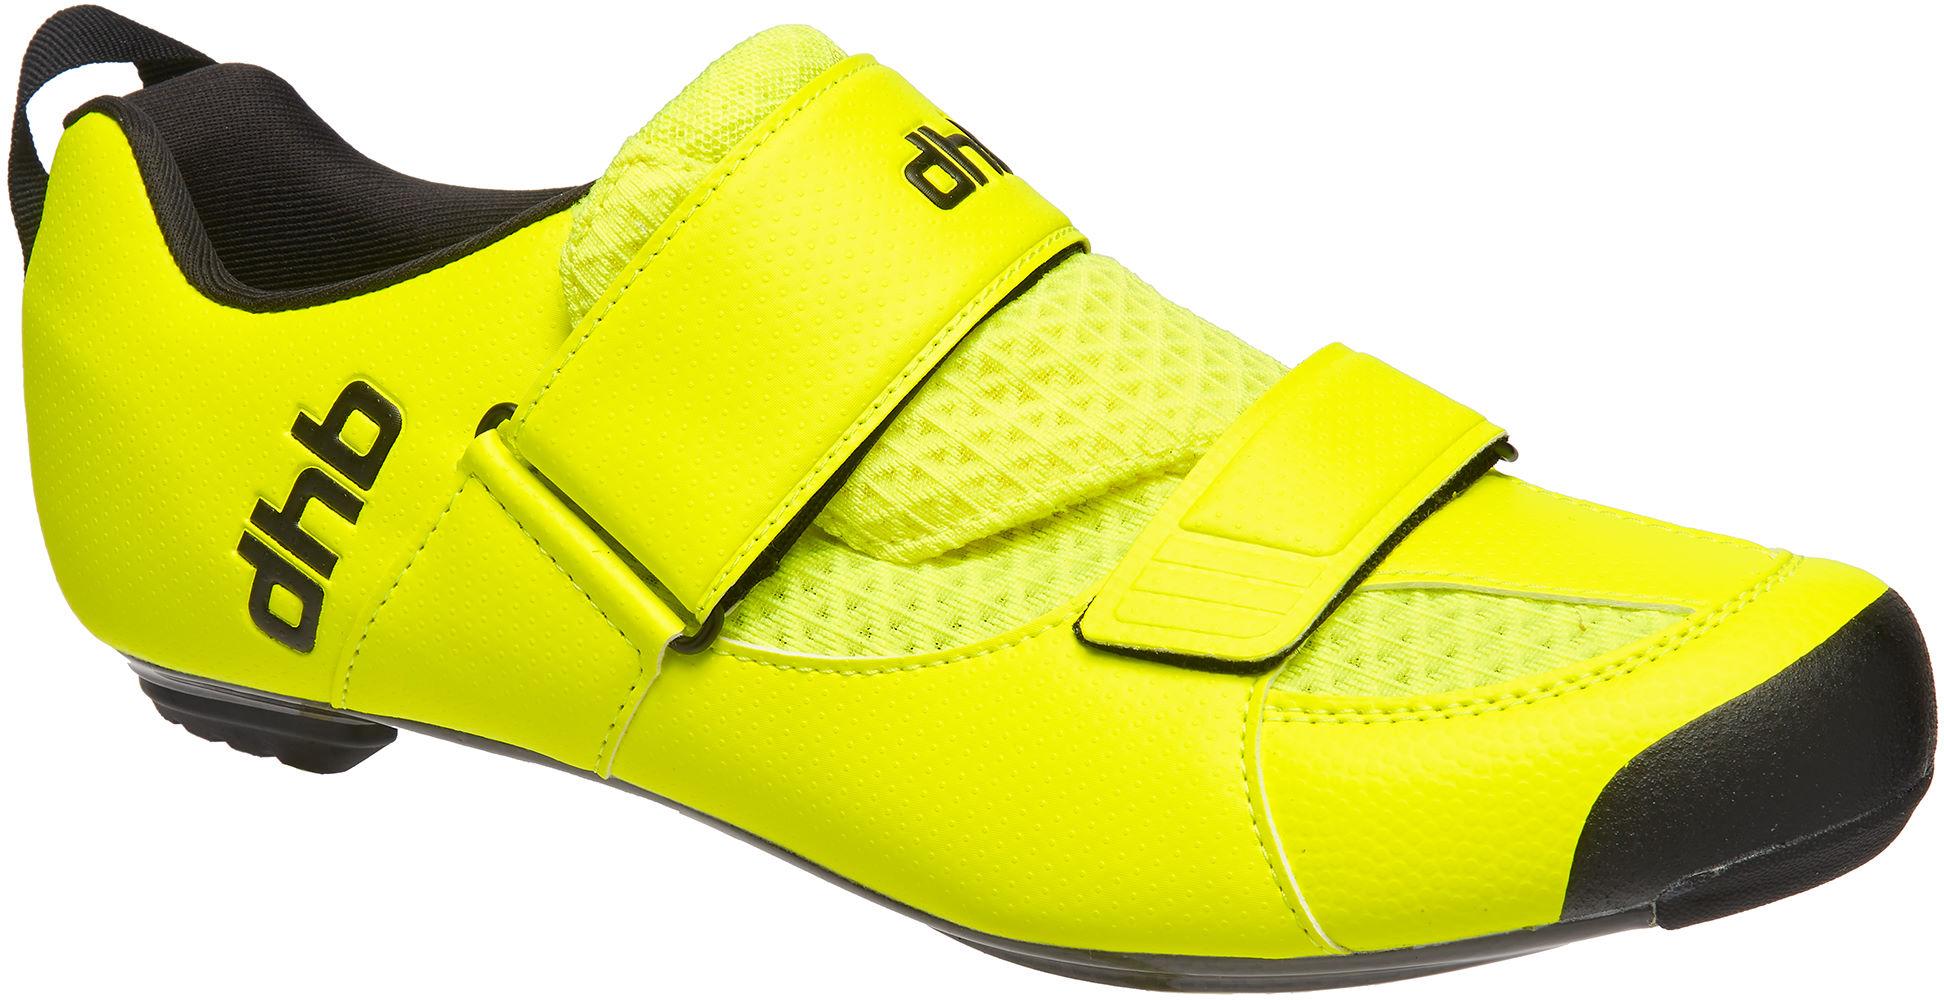 Dhb Trinity Carbon Tri Shoe  Fluro Yellow